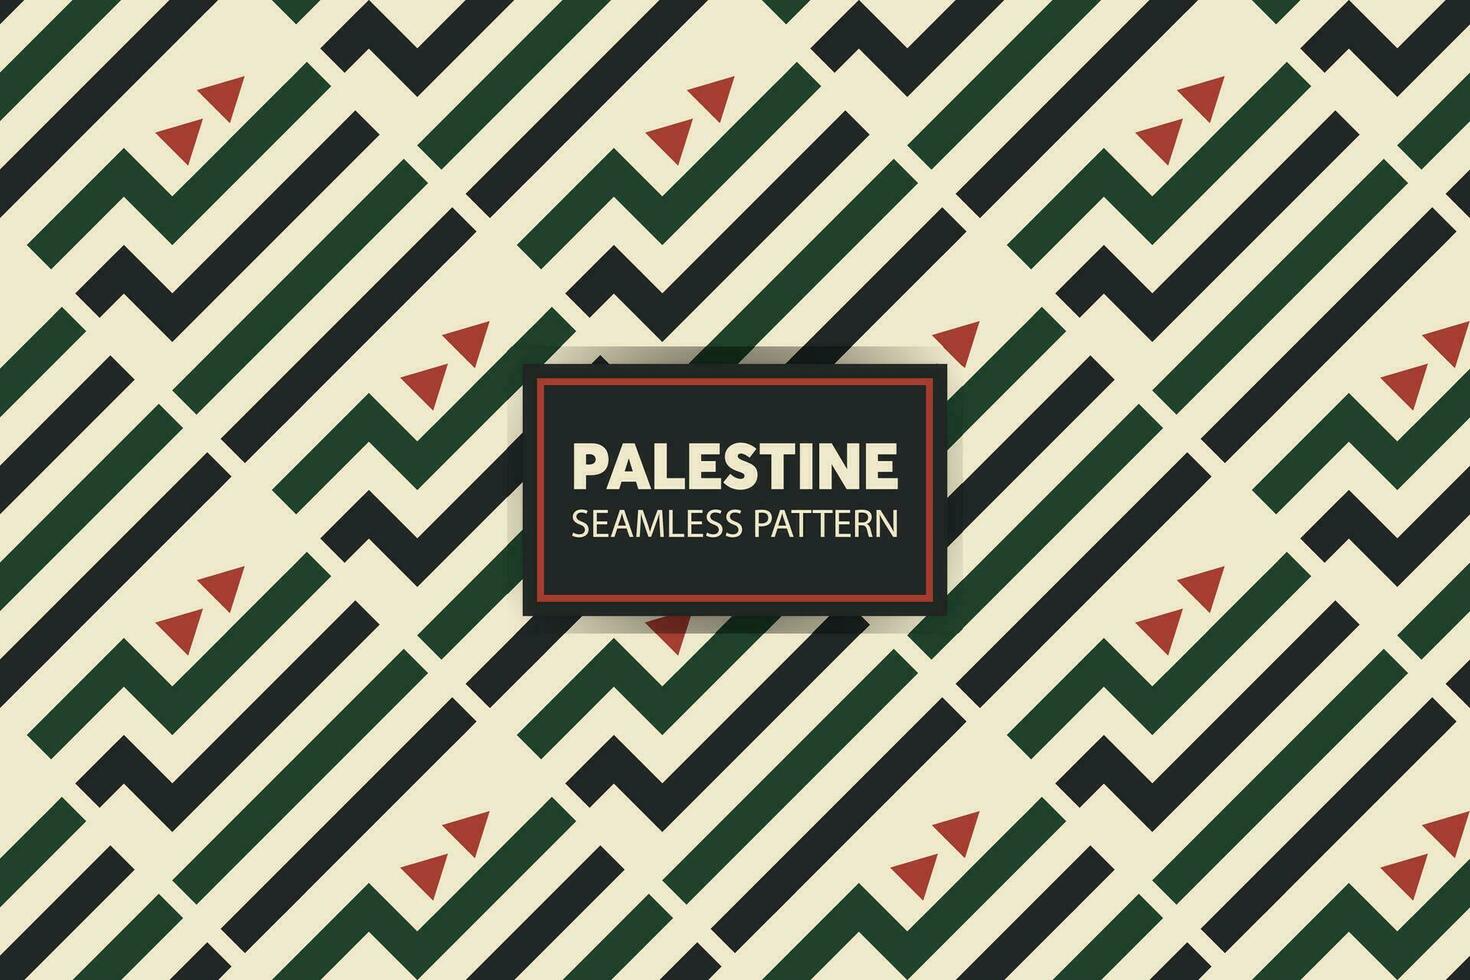 palestinsk broderi mönster bakgrund. bra för presentationer och rutschbanor. vektor fil.